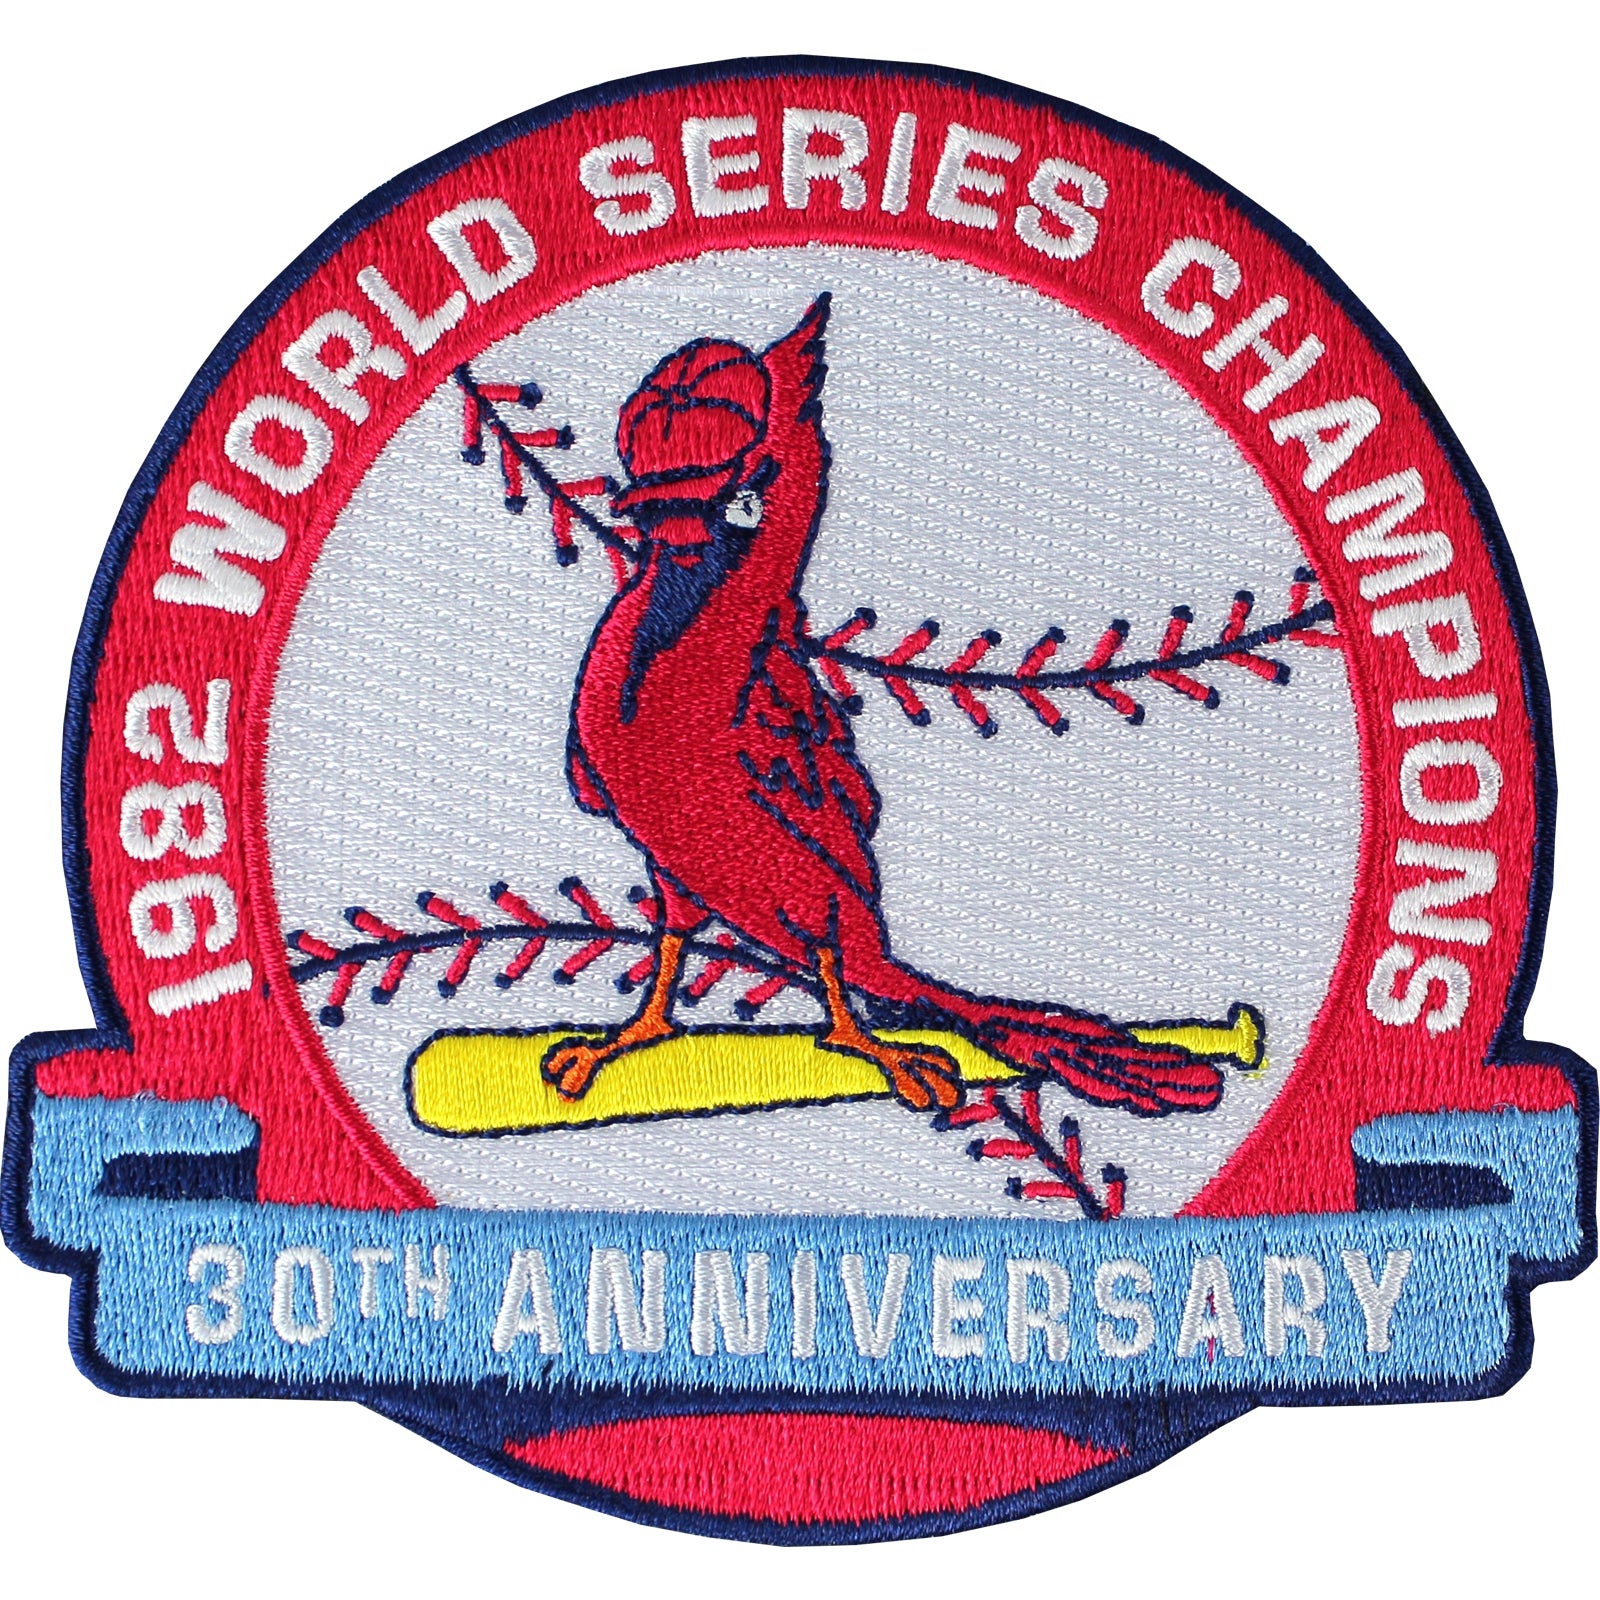 1989 St. Louis Cardinals Emblem Tee - XL – A Childhood Memory